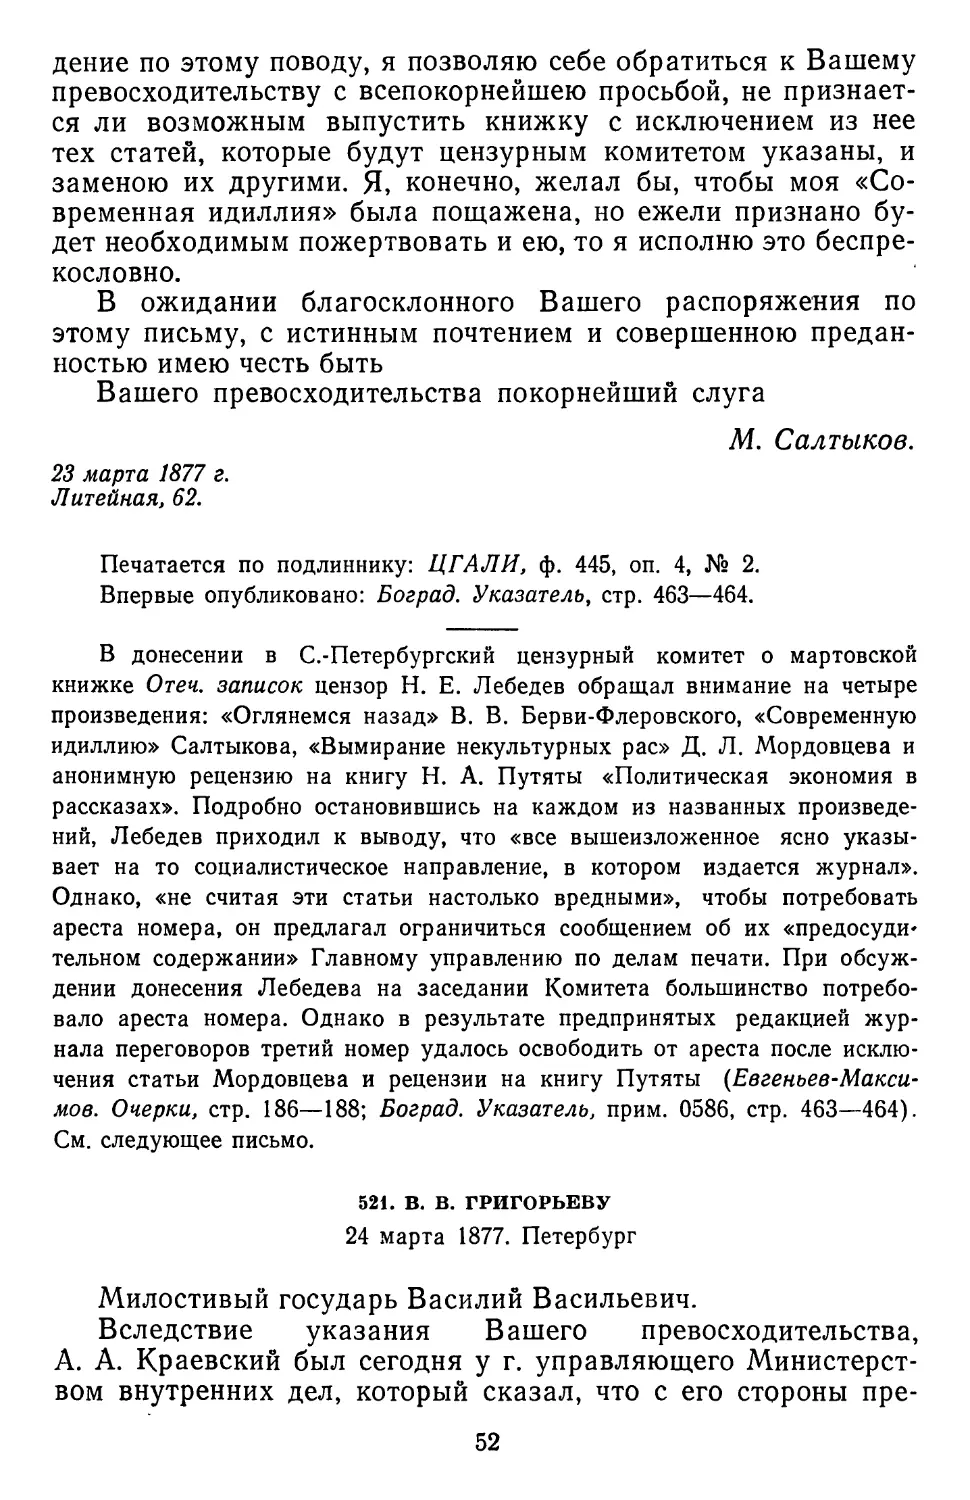 521.В.В. Григорьеву. 24 марта 1877.Петербург